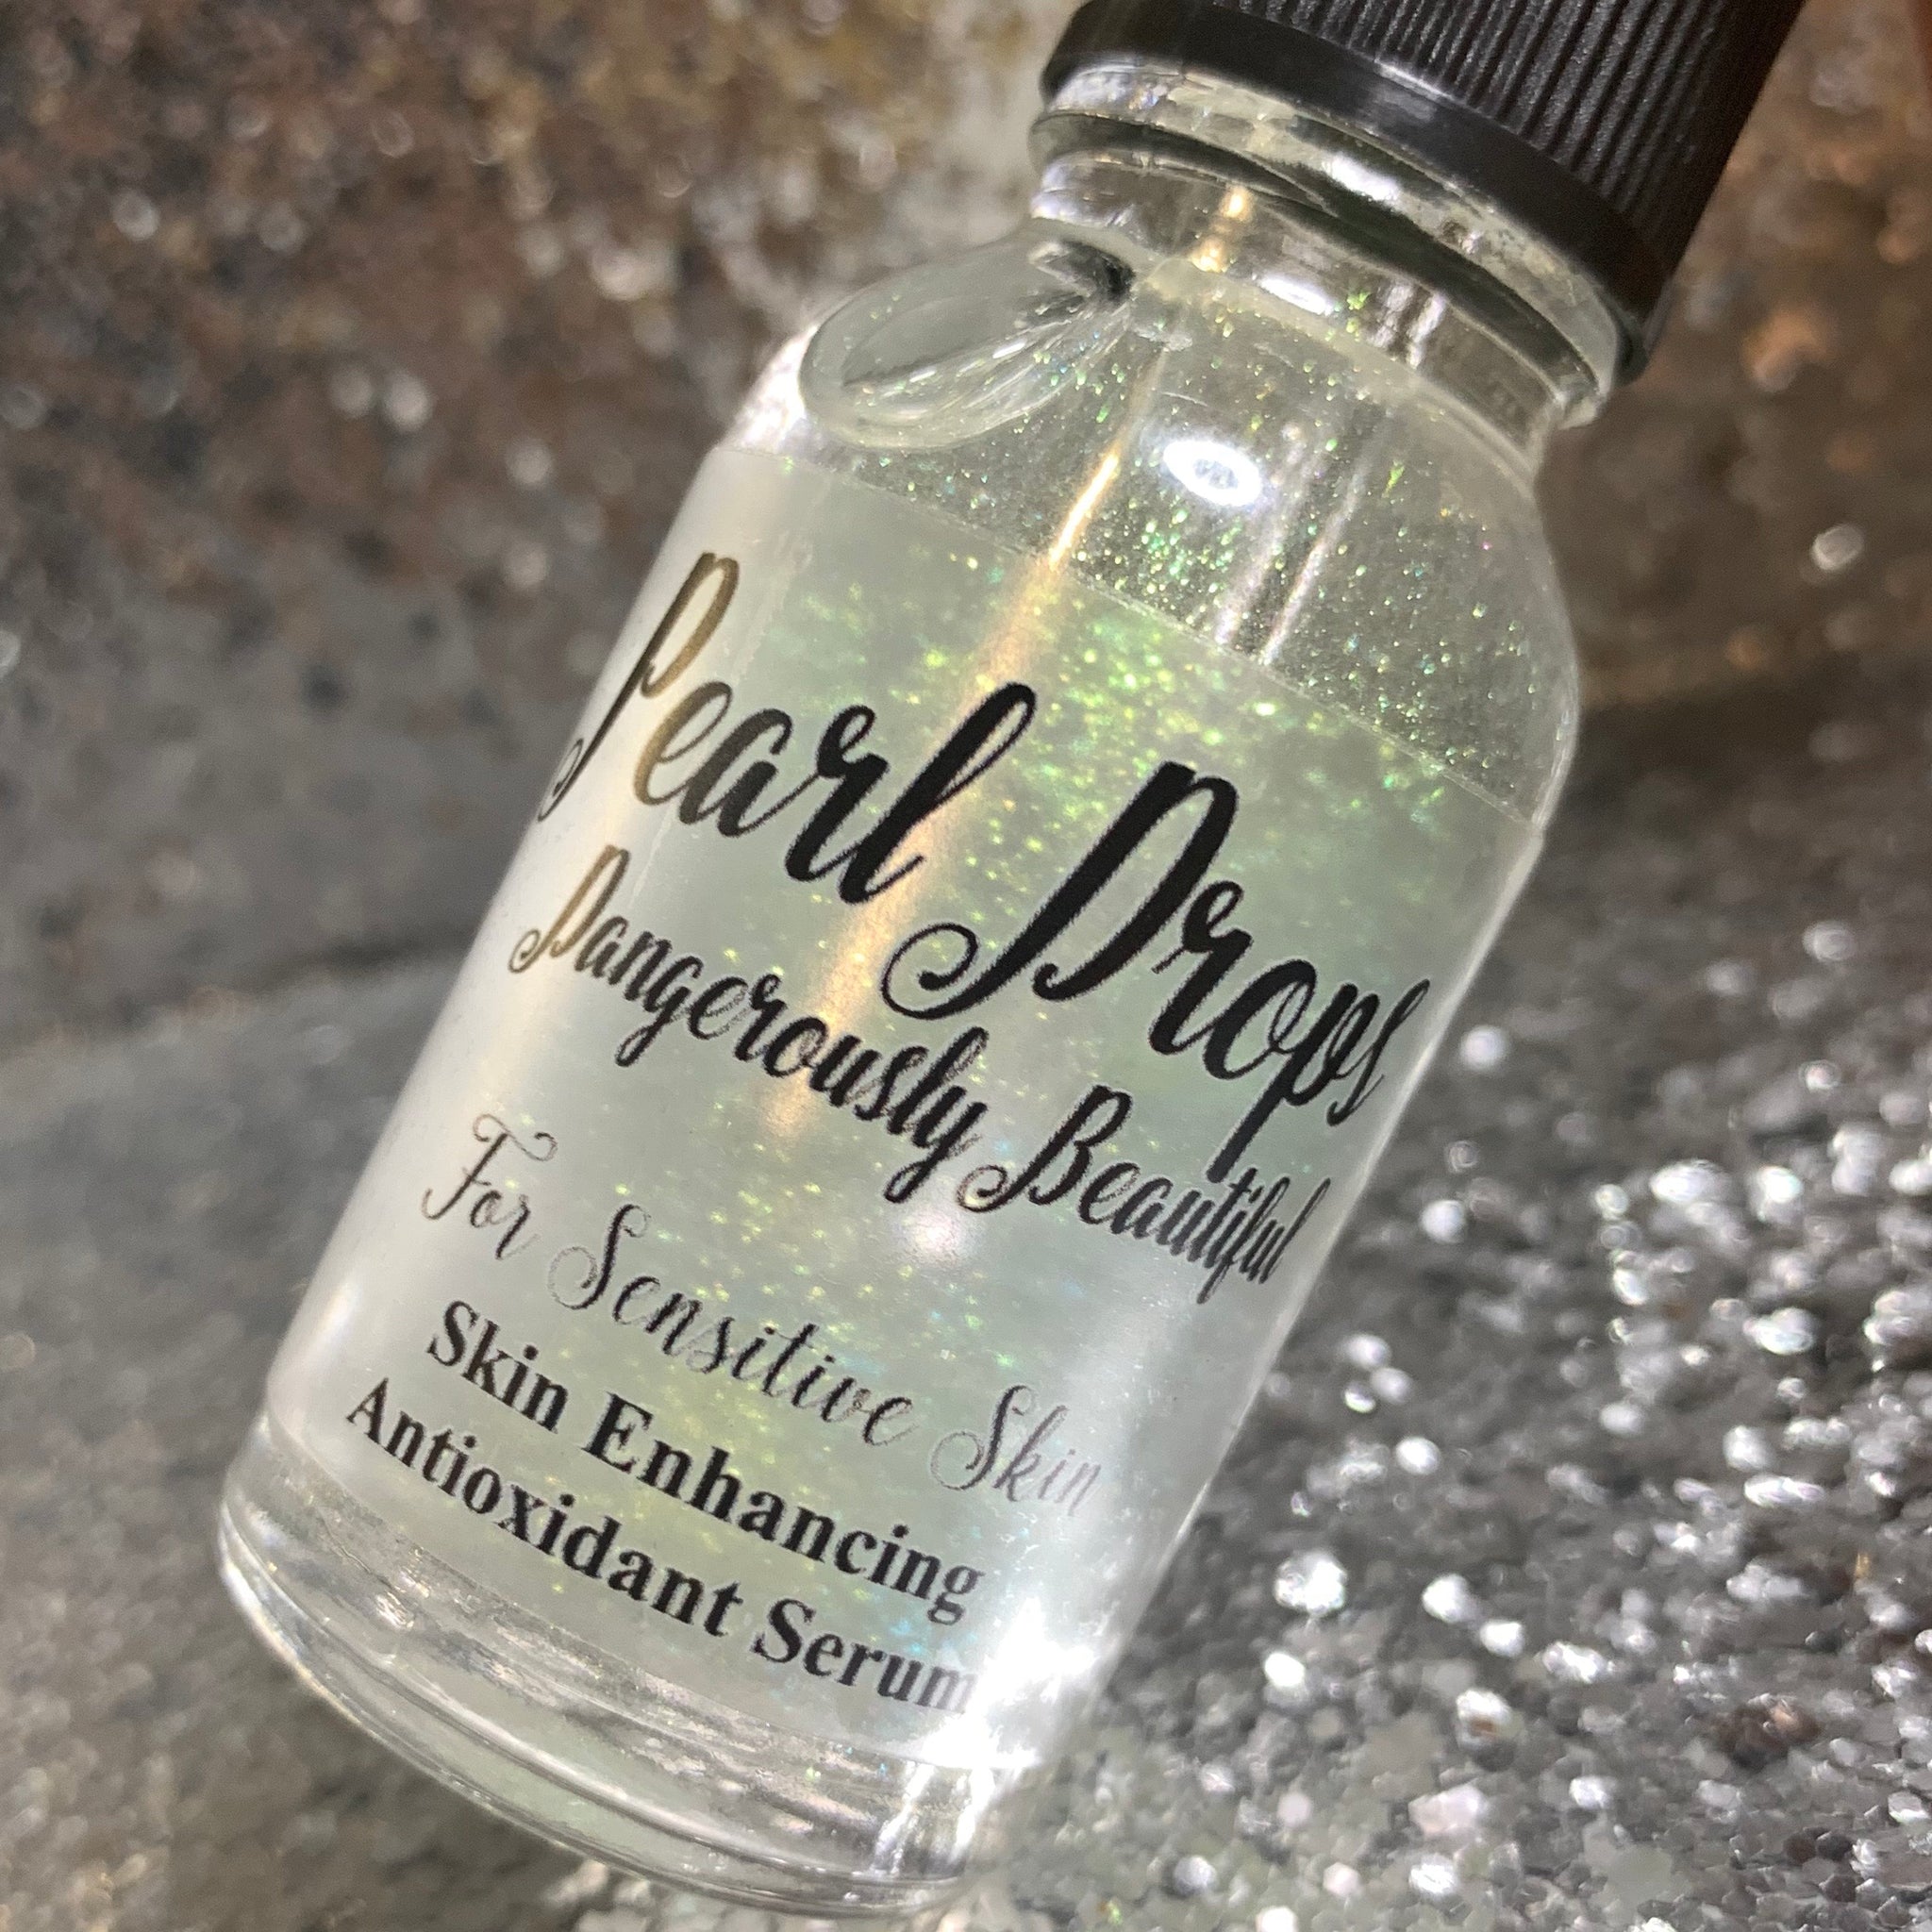 Pearl Drops – Copacetic Cosmetics